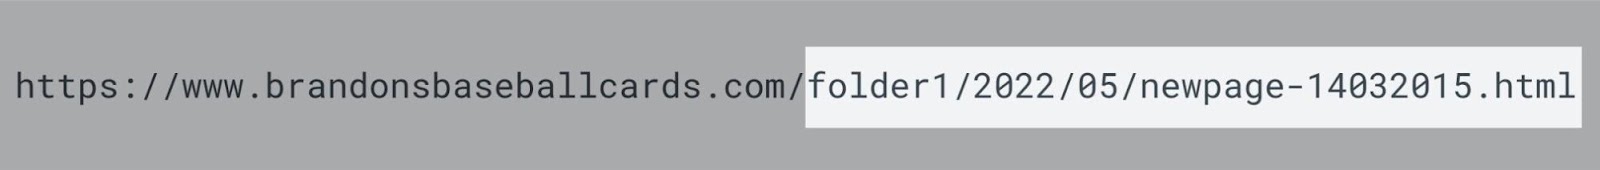 An “unfriendly” URL example